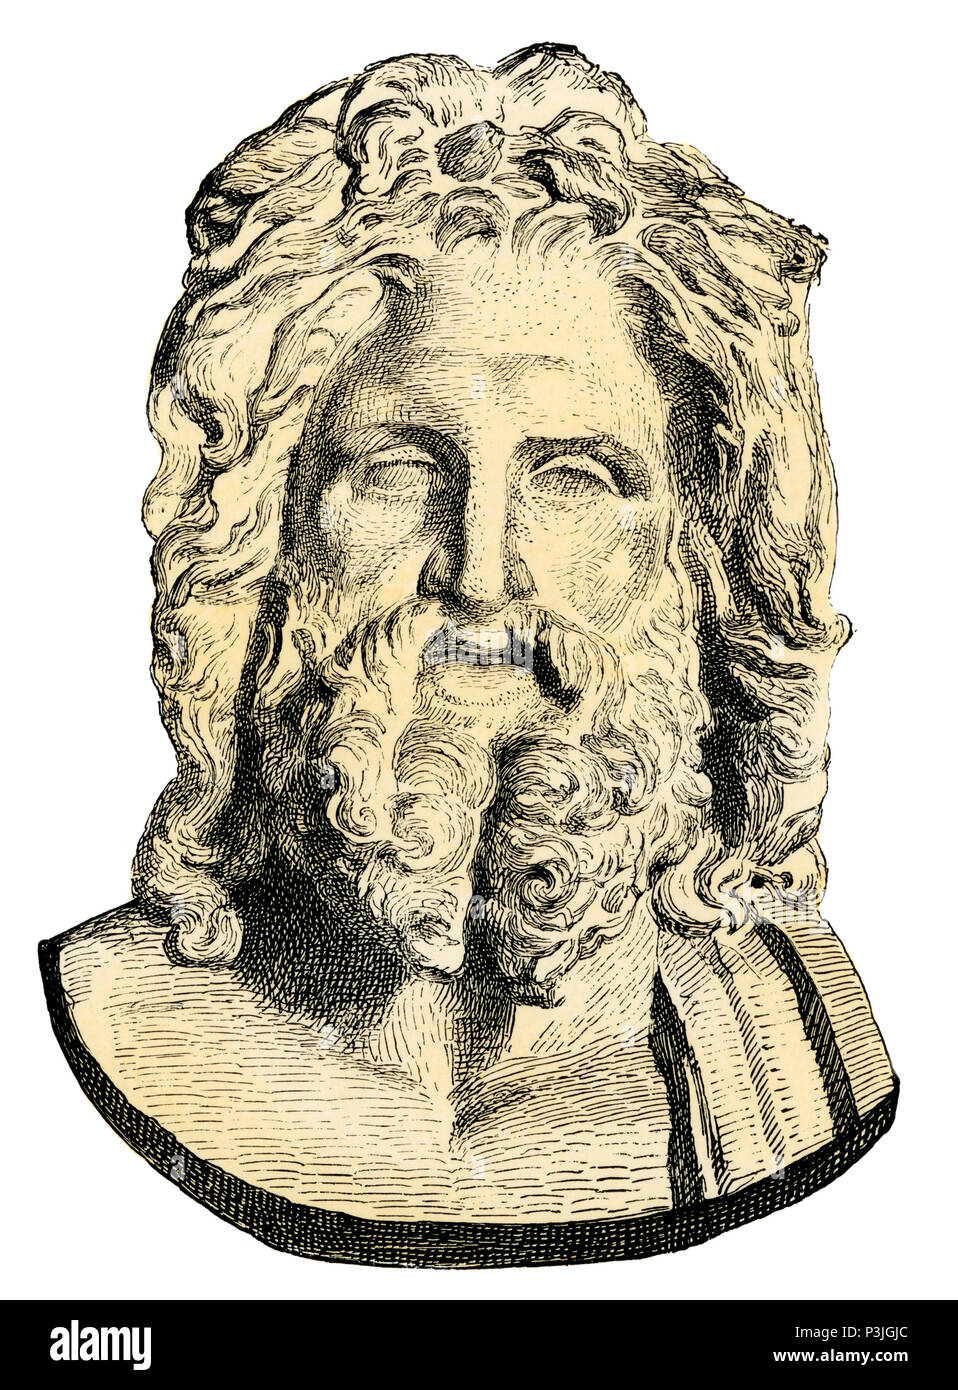 Zeus, rey de los antiguos dioses griegos. Xilografía coloreada a mano reproducción de un busto en el Vaticano Foto de stock